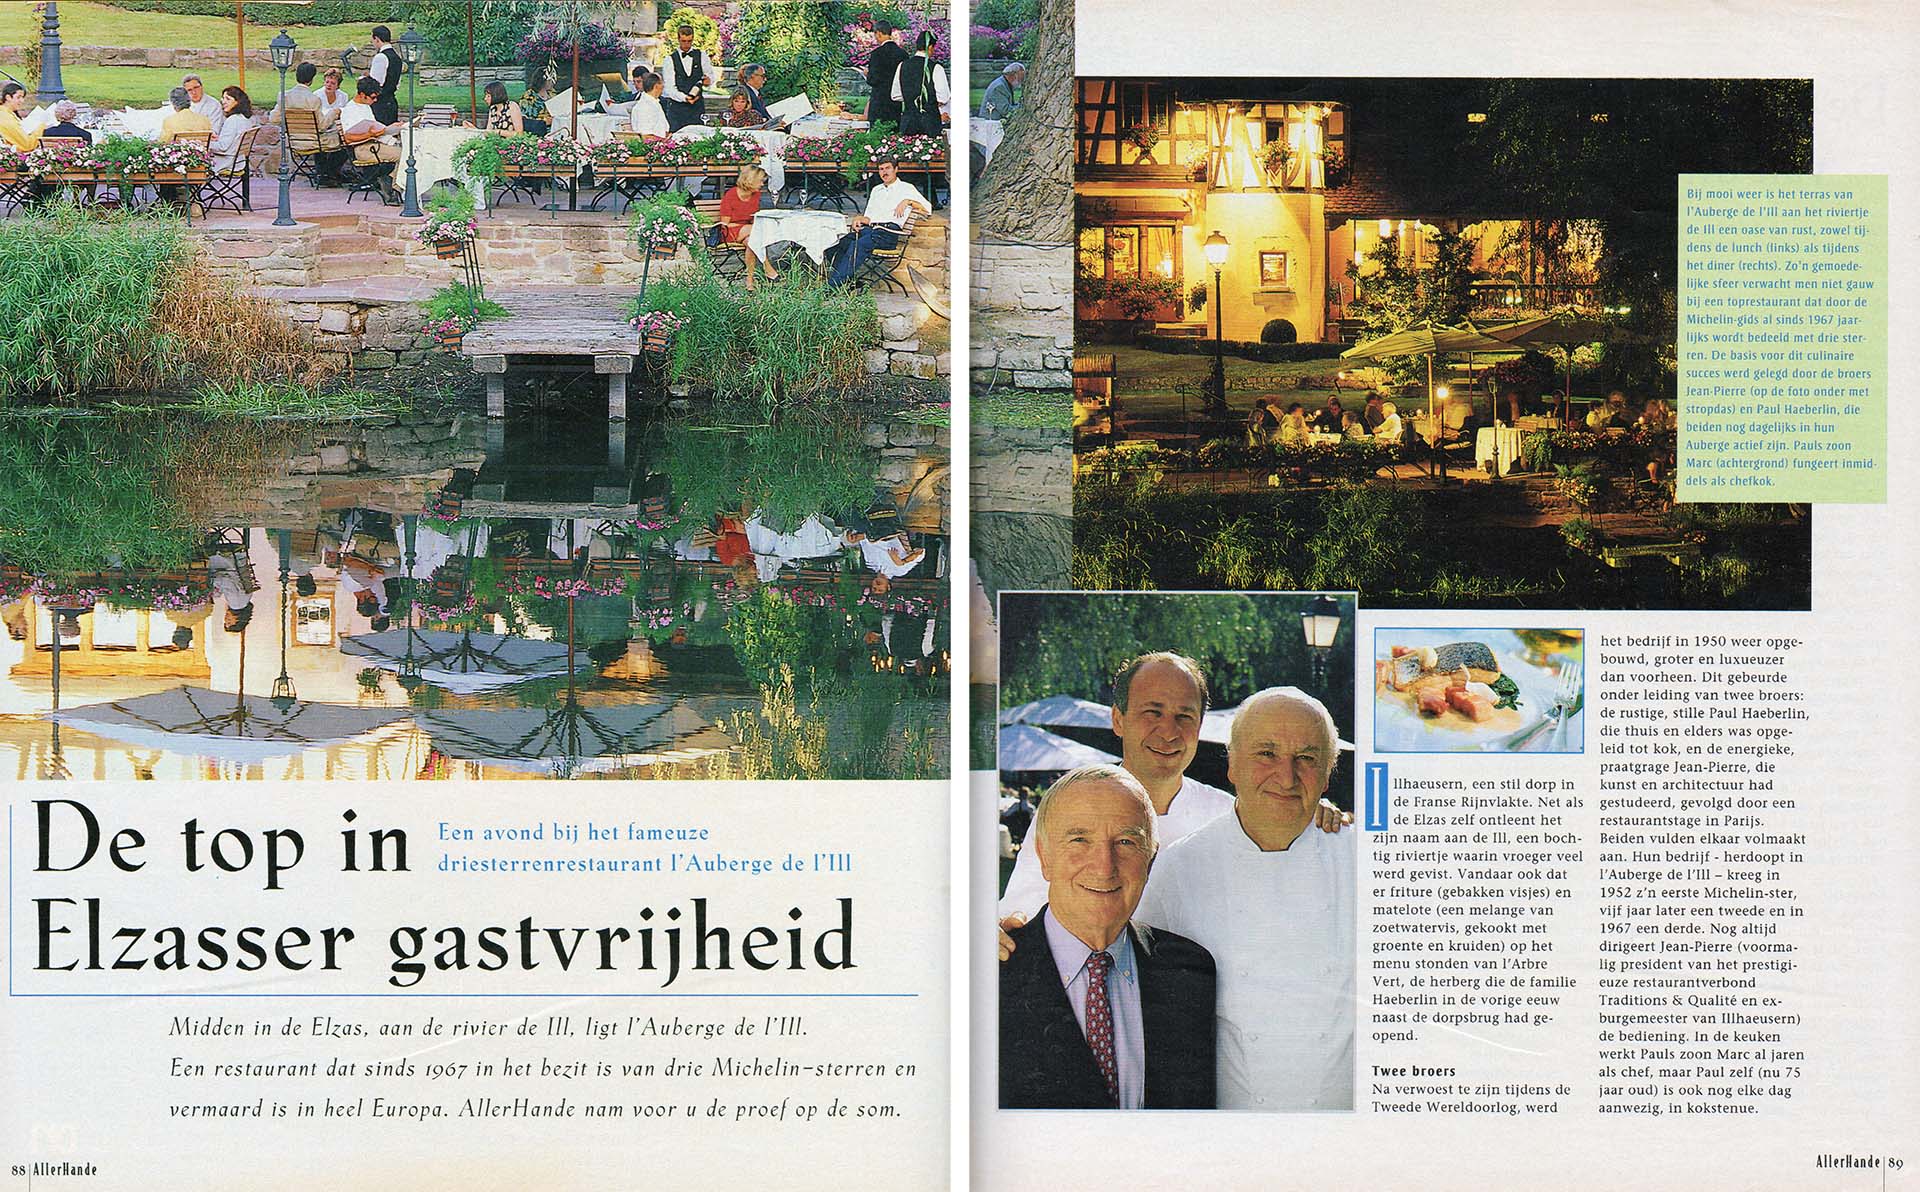 Publicatie in AllerHande over driesterrenrestaurant restaurant in Elzas.